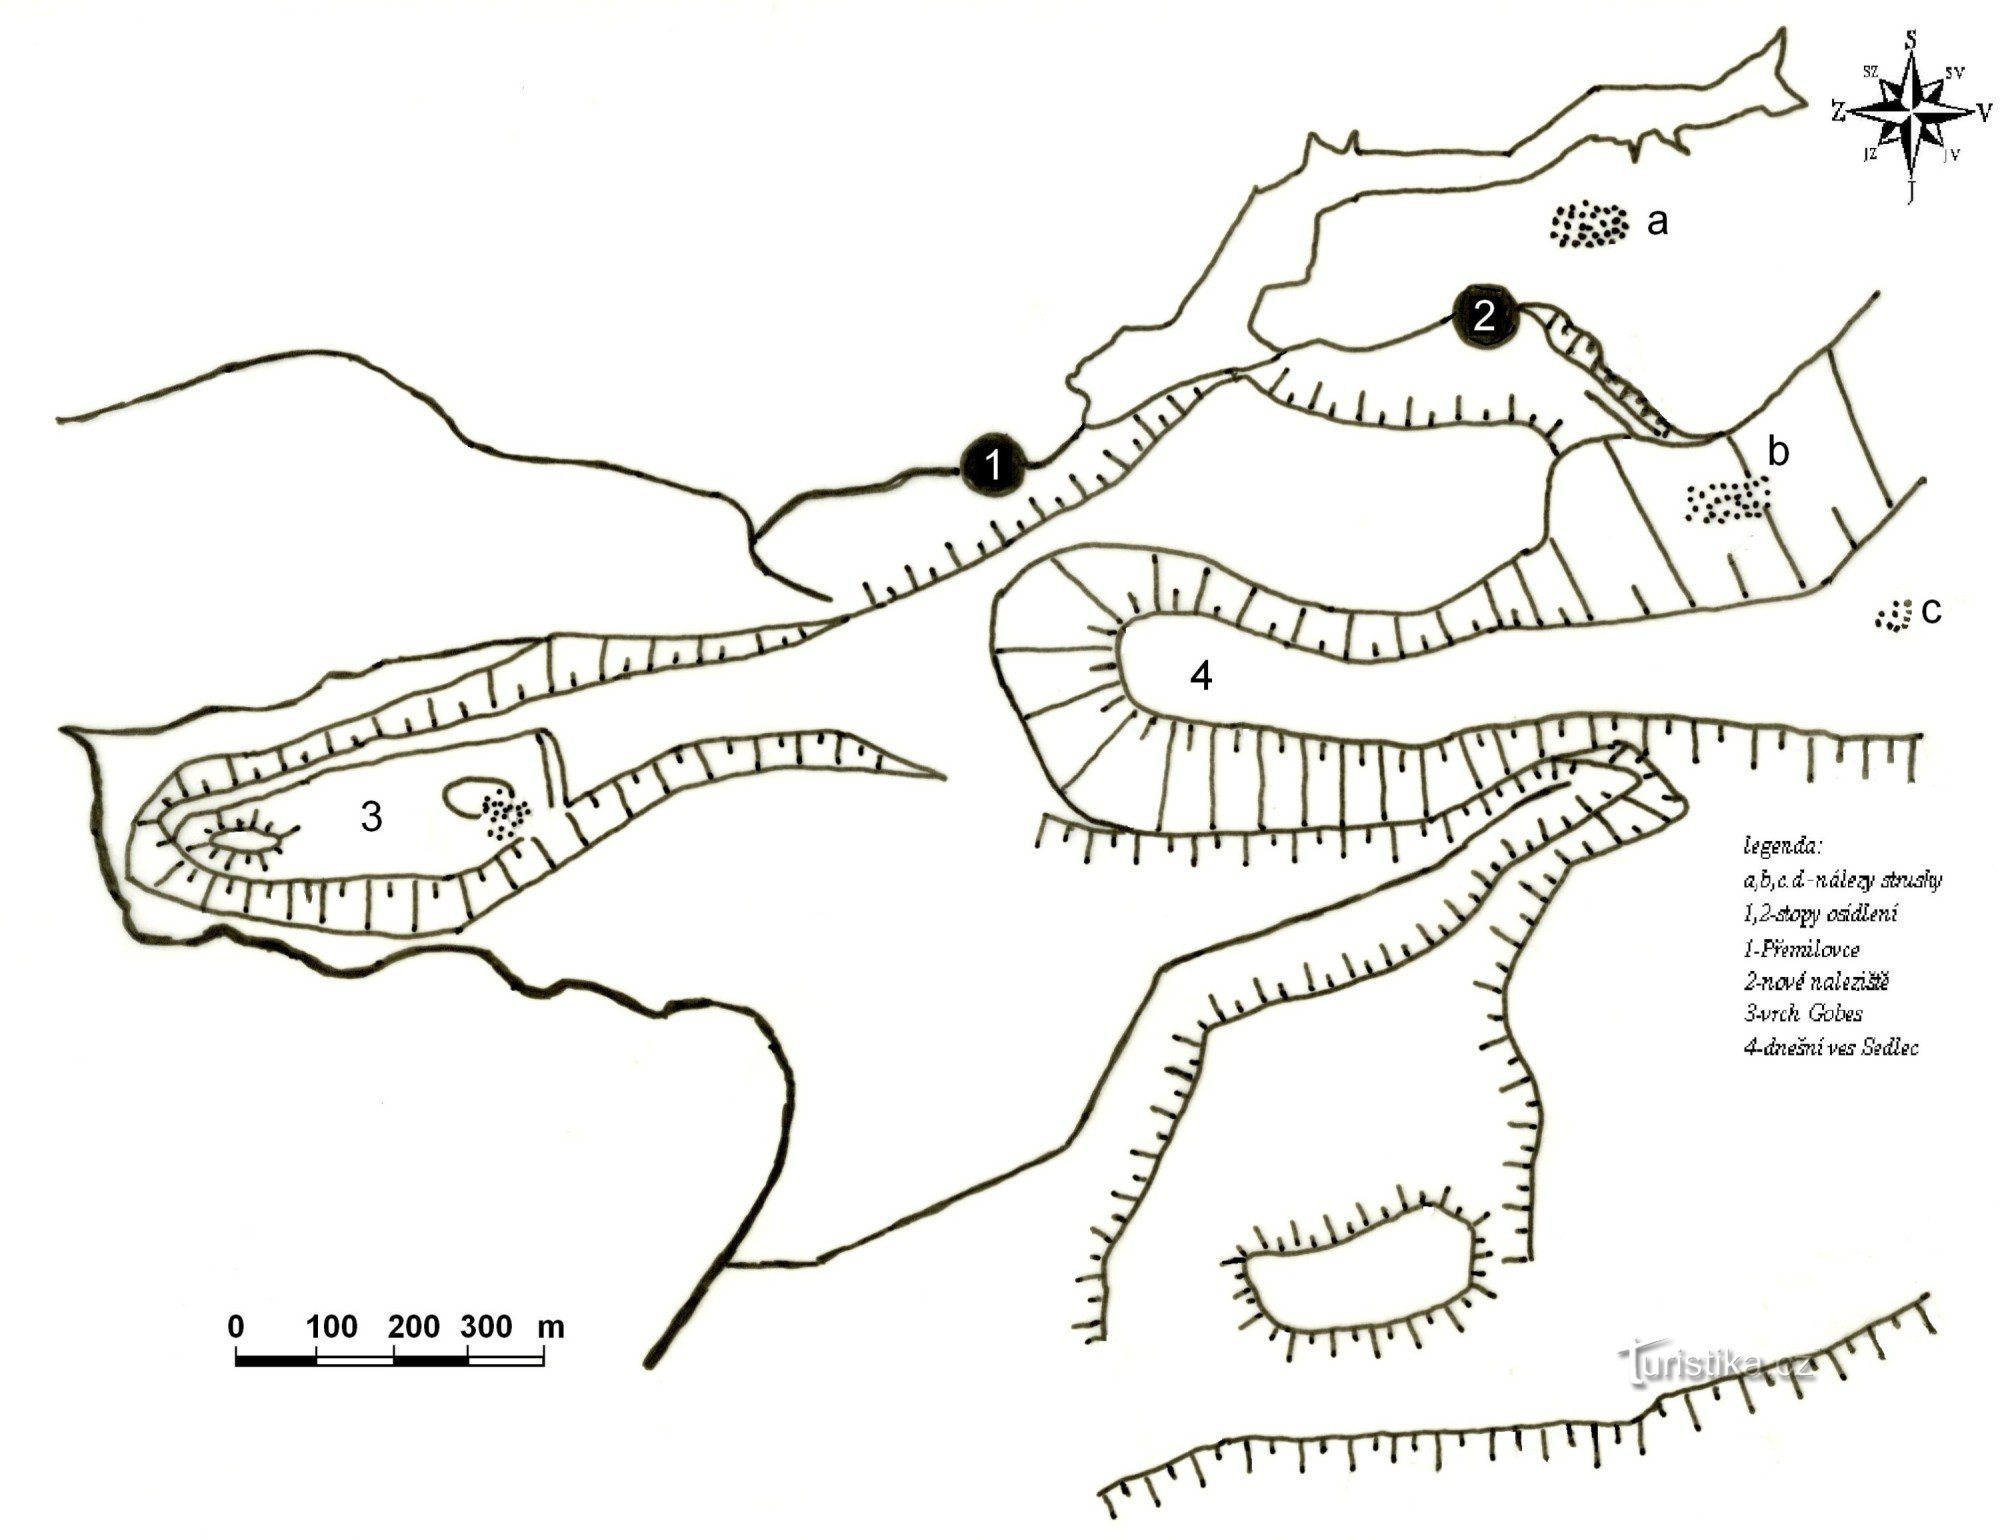 ліворуч пагорб Гобес, точка 1 - Пршеміловіце, точка 2 - місце з ранньосередньовічним